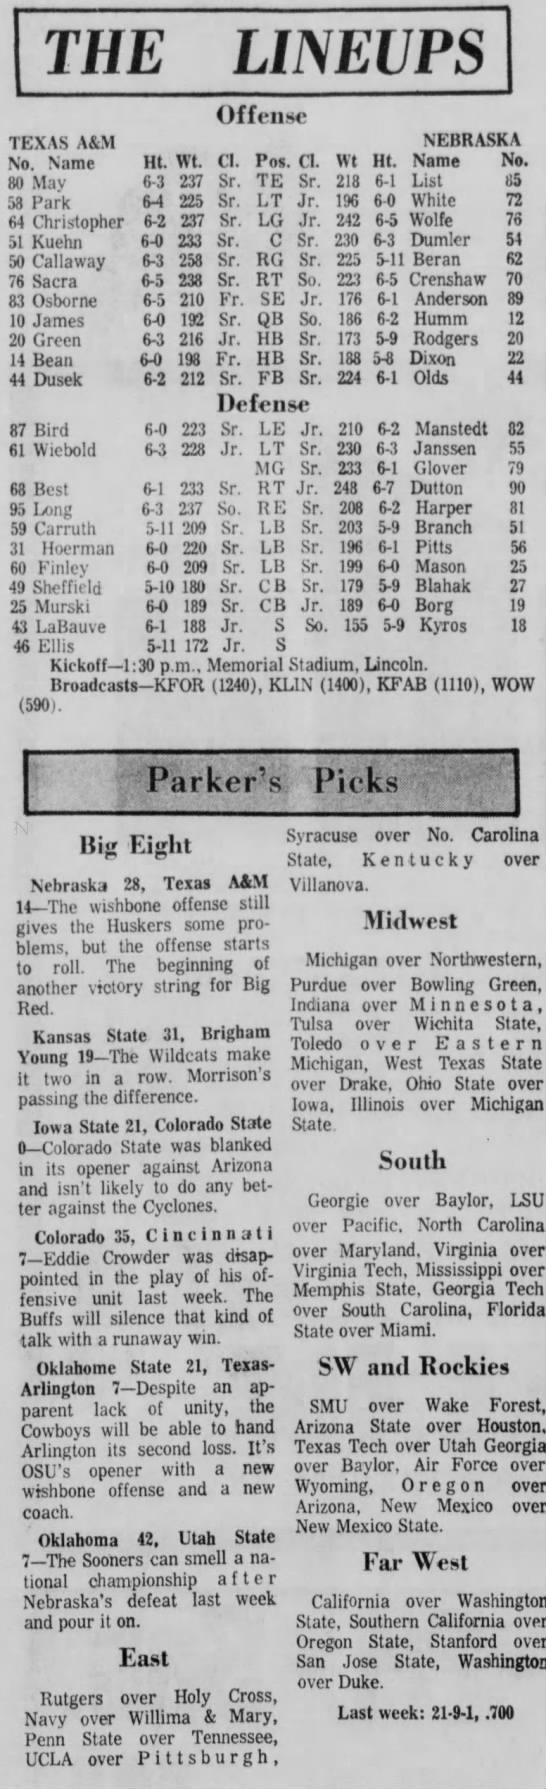 1972 Nebraska-Texas A&M football games lineups - 